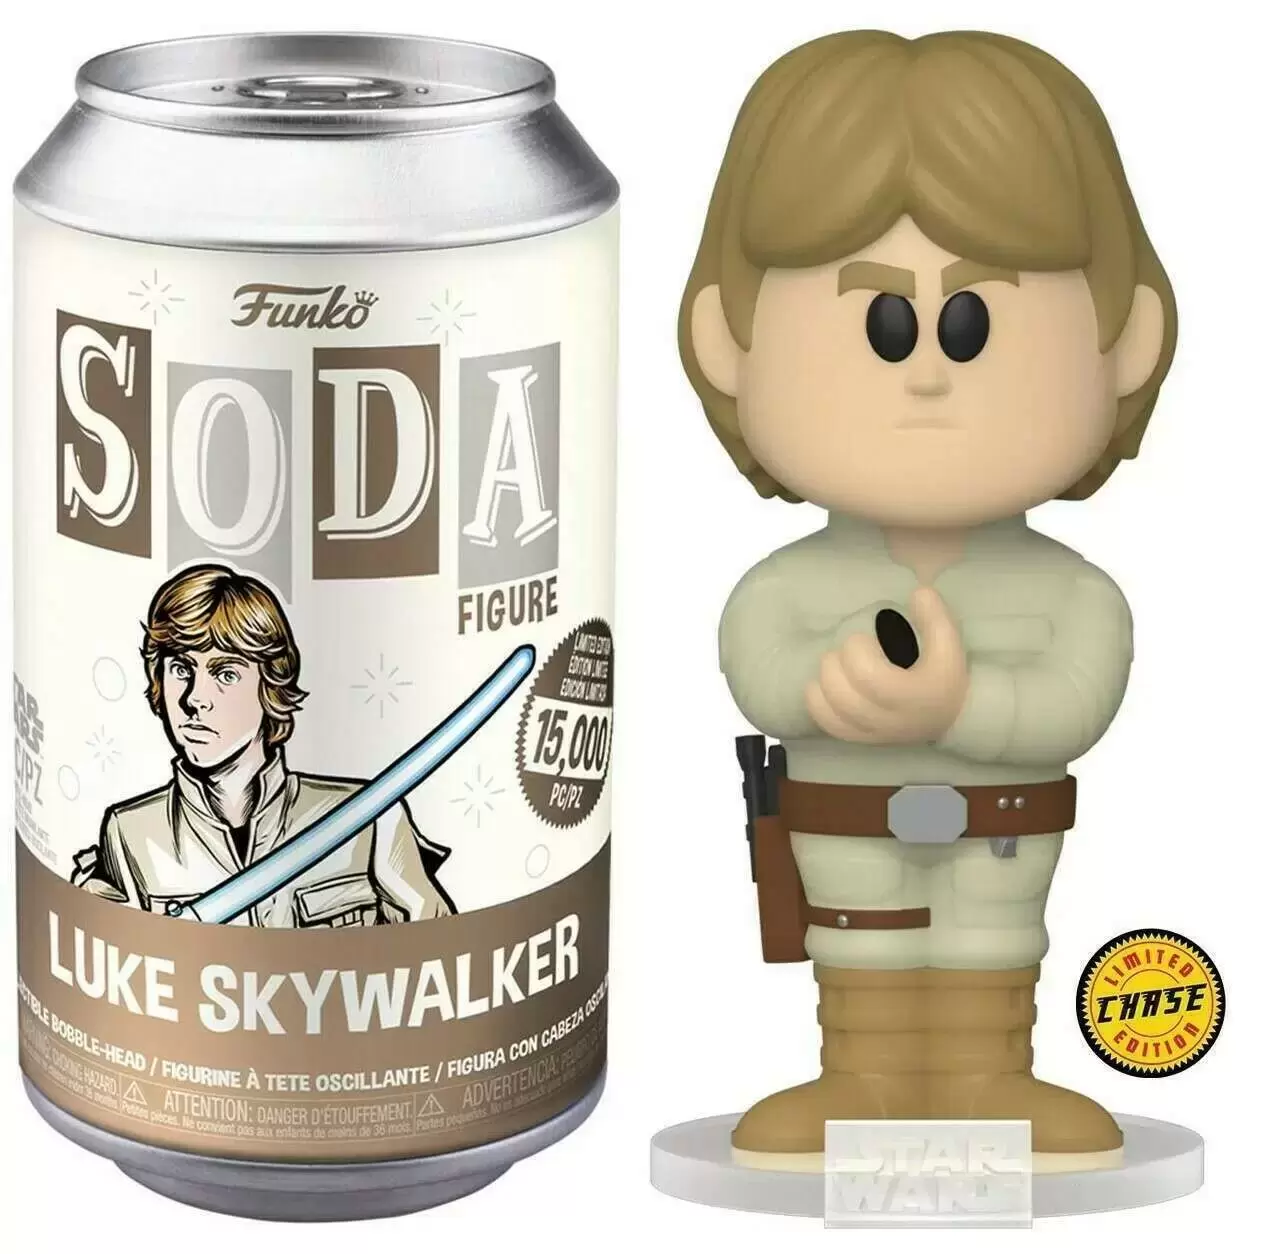 Vinyl Soda! - Star Wars - Luke Skywalker Chase